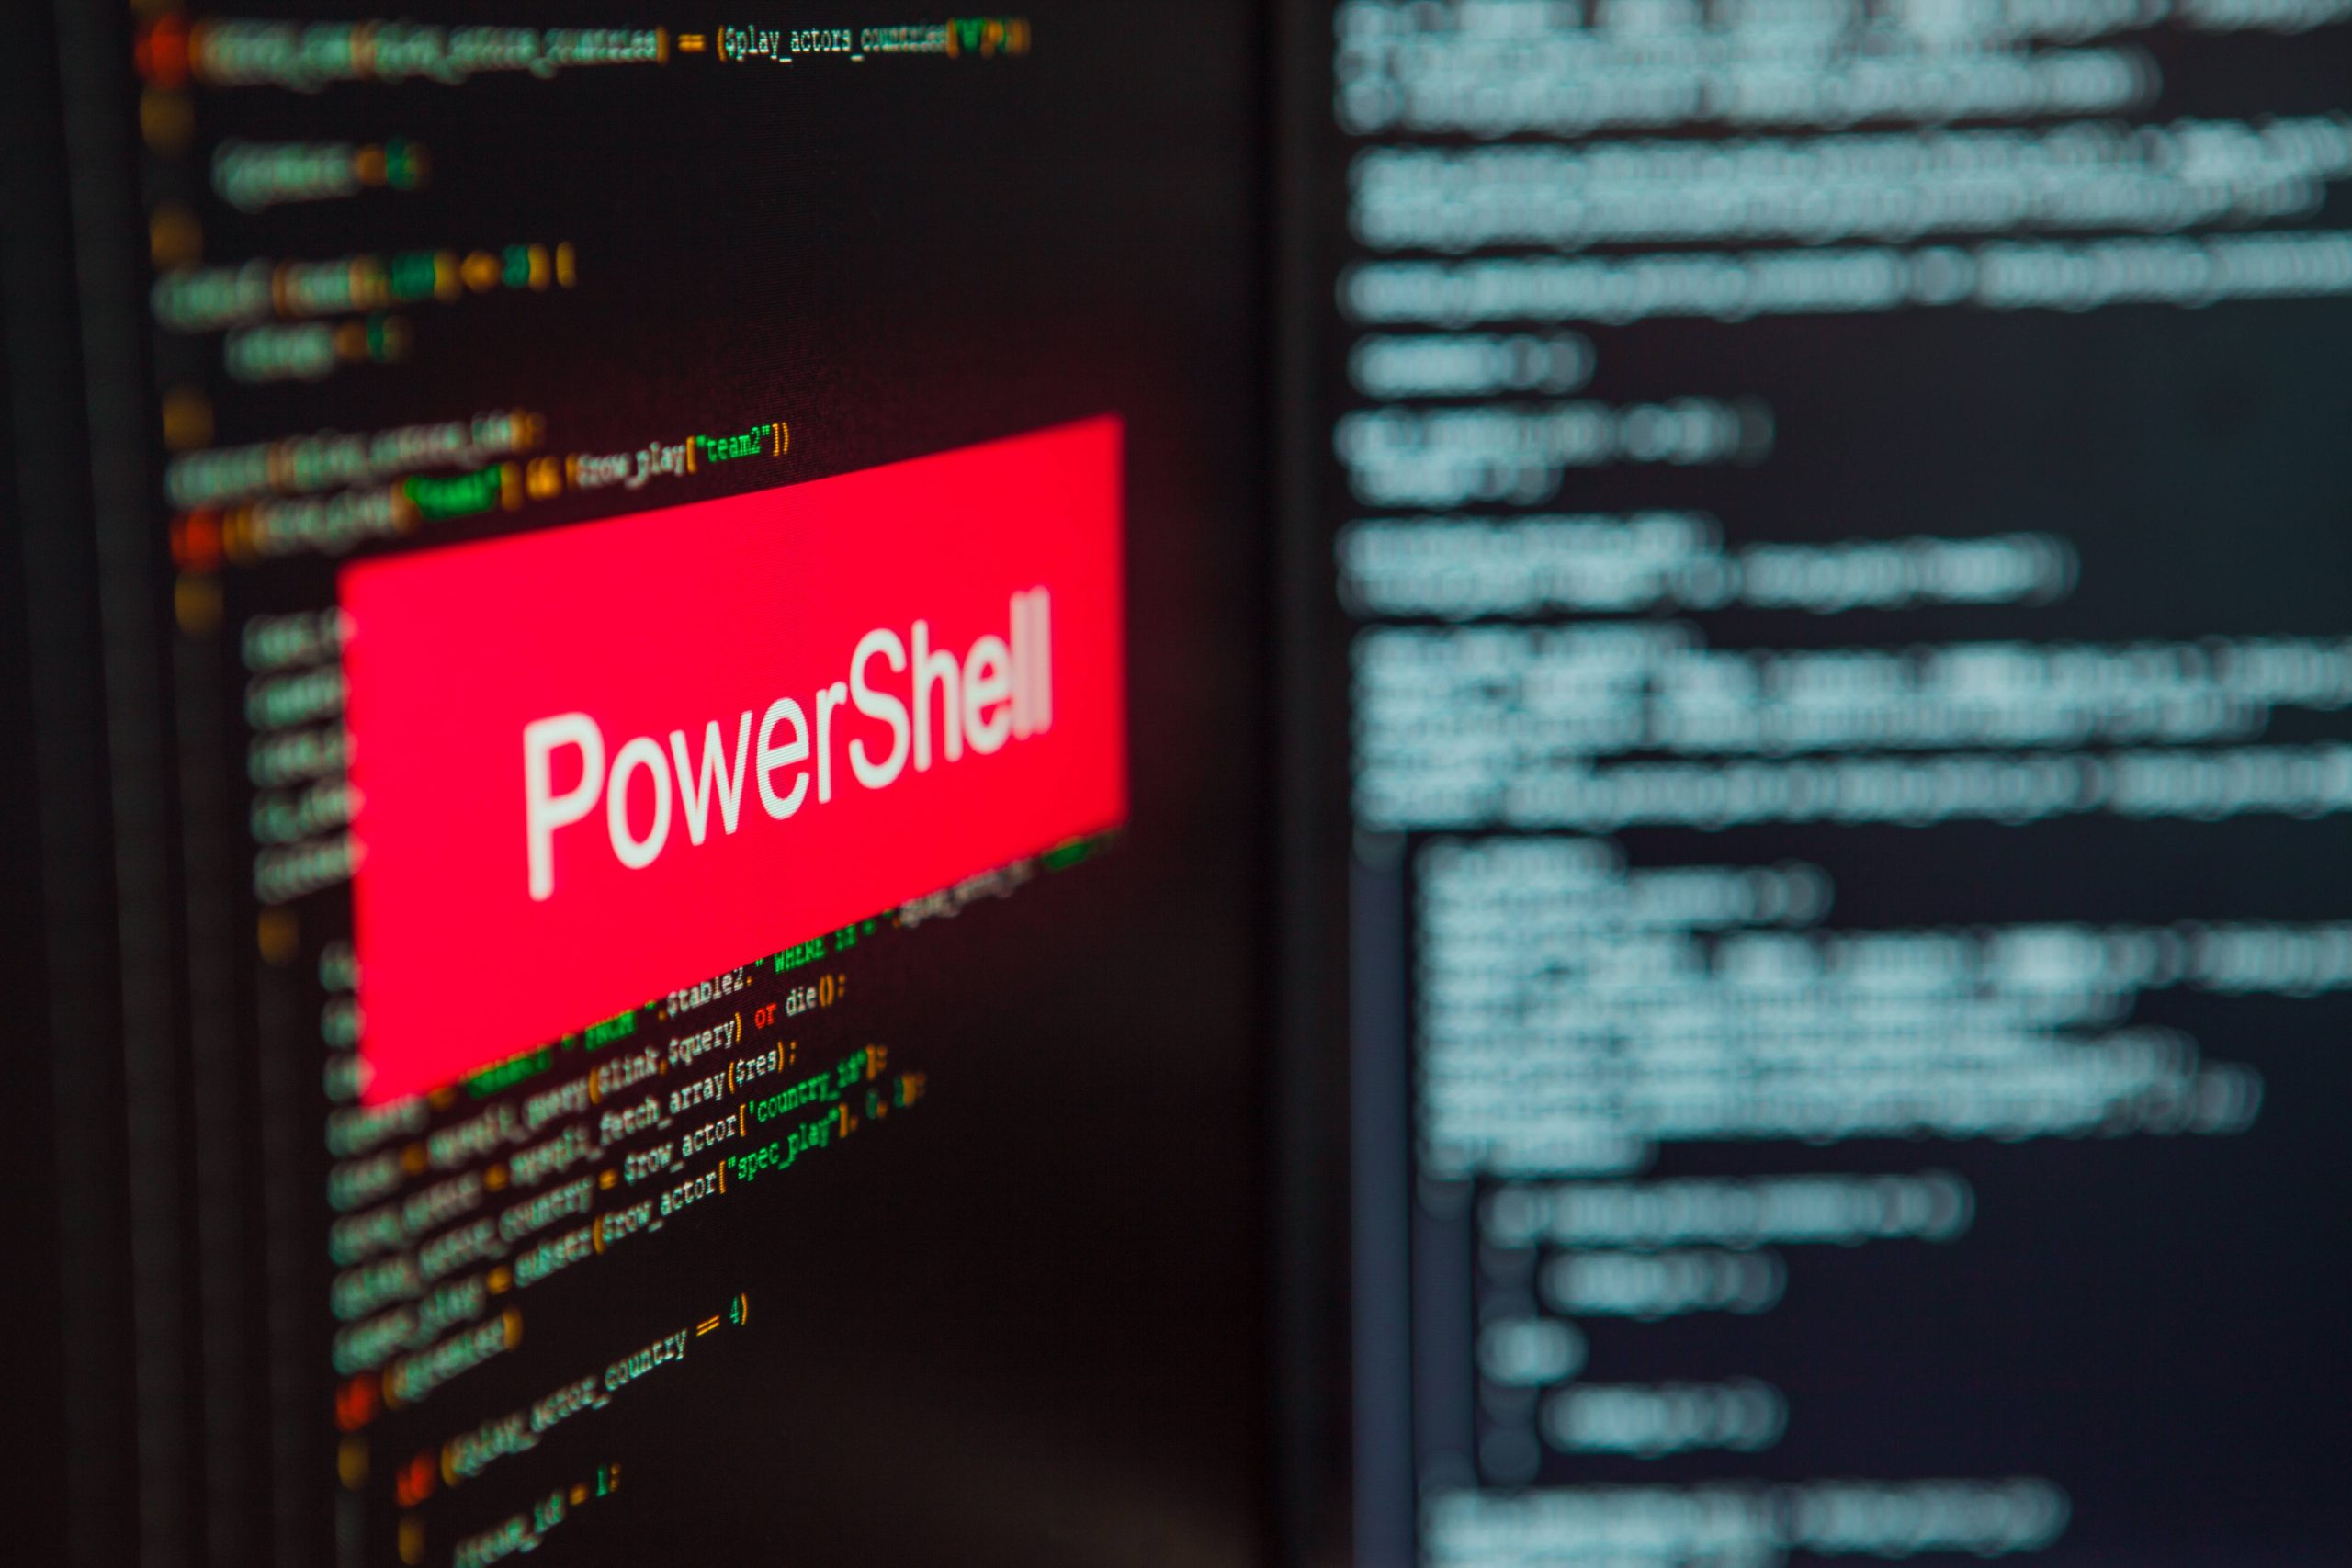 Artikel über Windows PowerShell und darüber, wie Angreifer es missbrauchen.